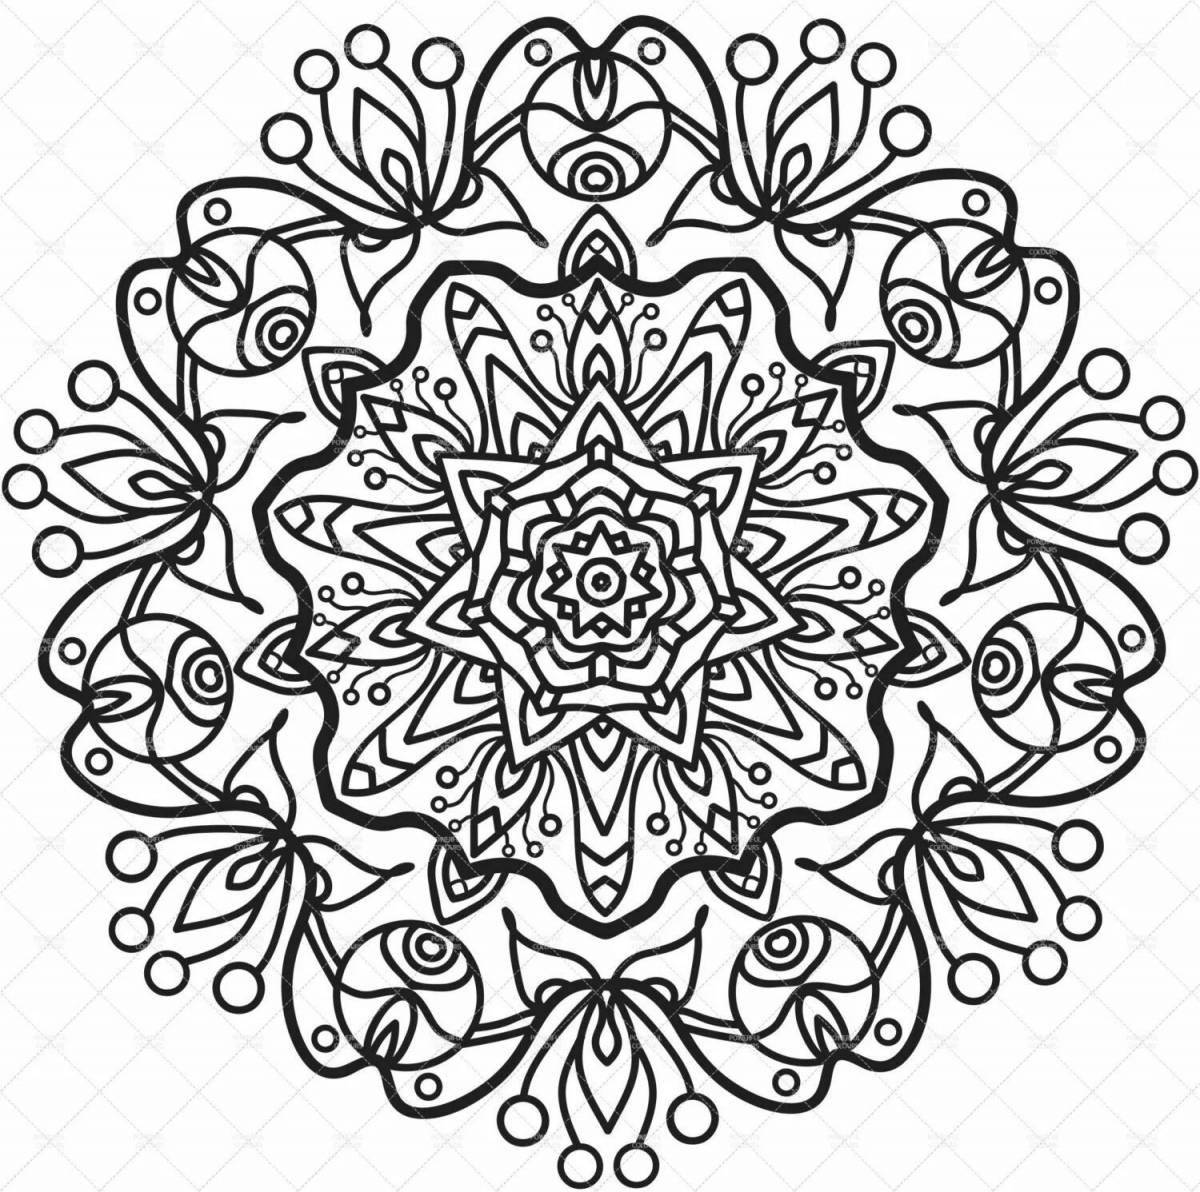 Majestic happiness mandala coloring page